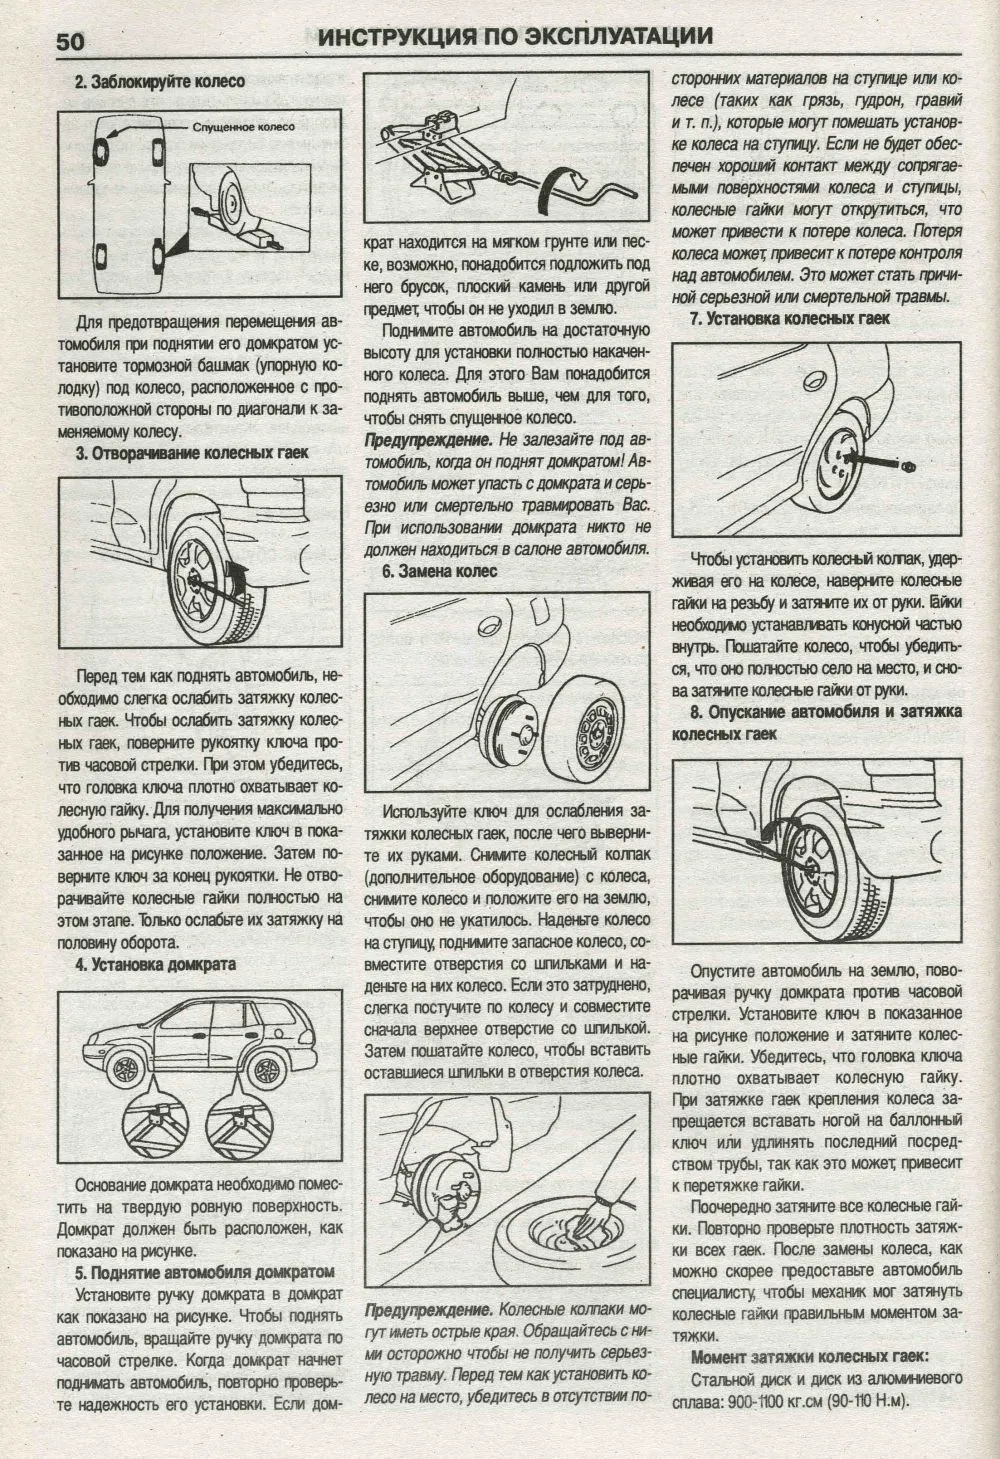 Книга Hyundai Santa Fe, Santa Fe Classic 2000-2006, Tagaz c 2007 бензин, дизель, электросхемы. Руководство по ремонту и эксплуатации автомобиля. Атласы автомобилей